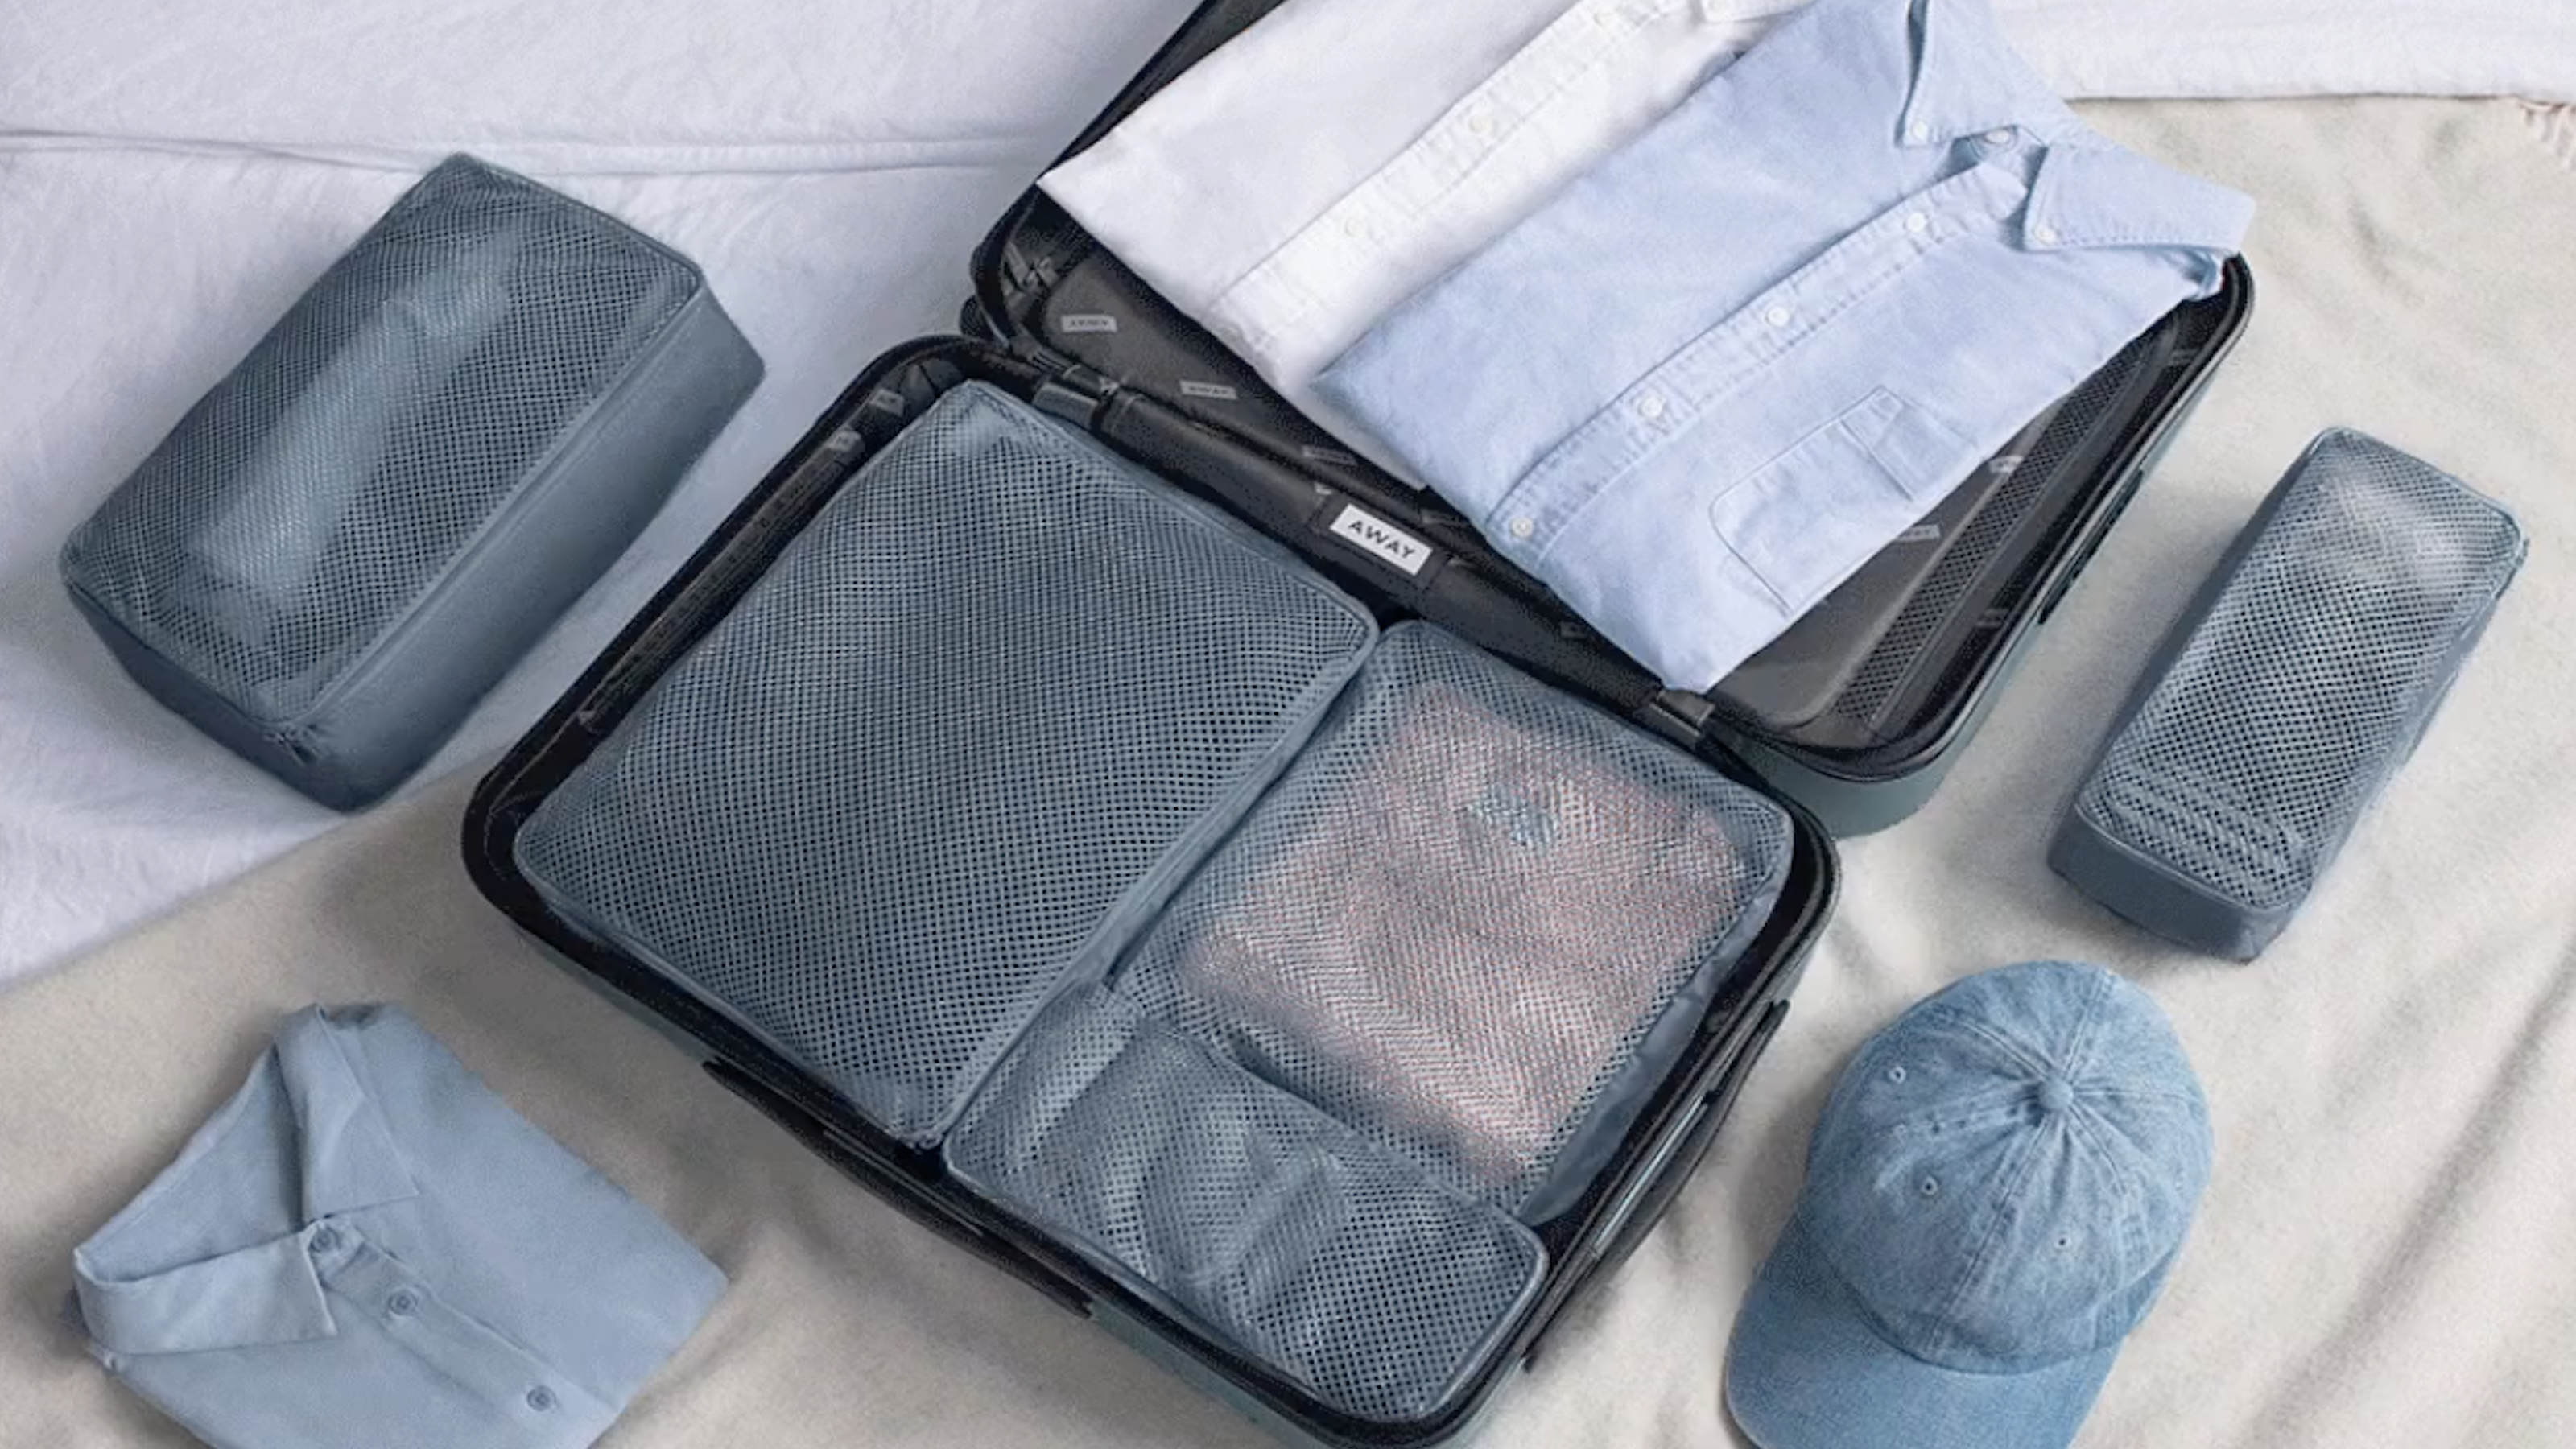 Handy Underwear & Small Garment Storage Bag for Travel